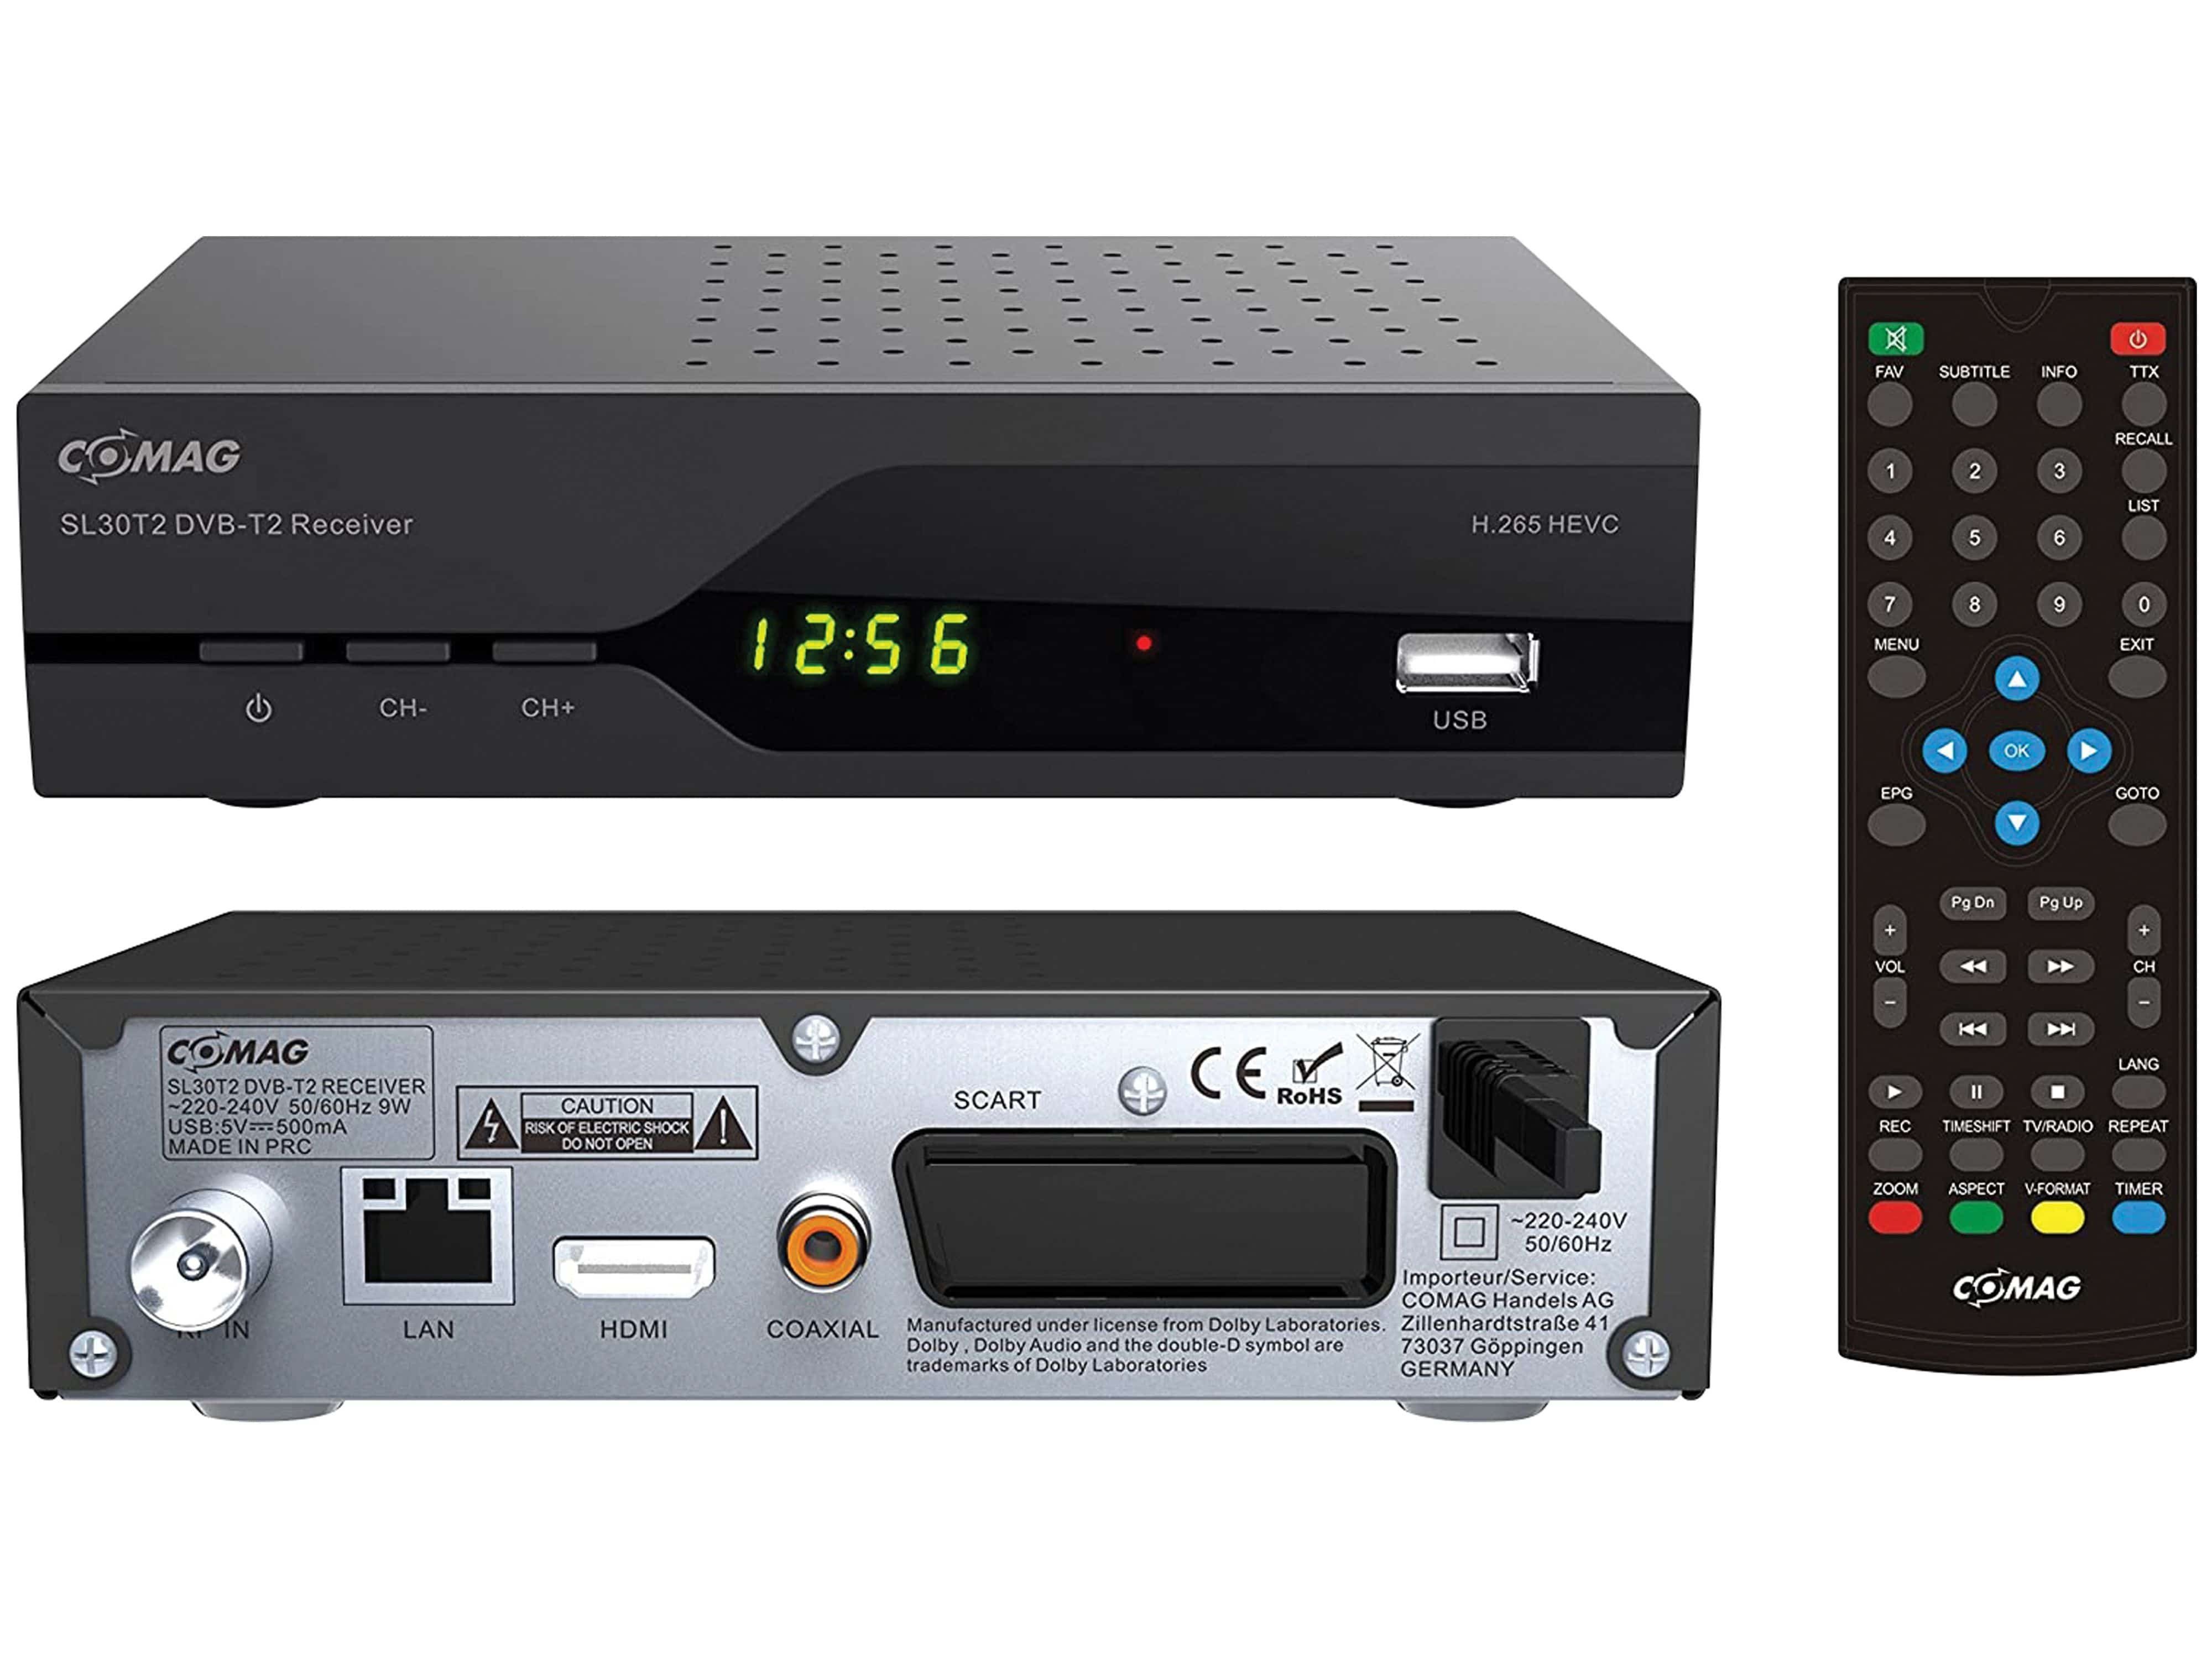 Comag COMAG DVB-T/T2 HD Receiver SL30T2, HEVC H.265 DVB-T2 Receiver